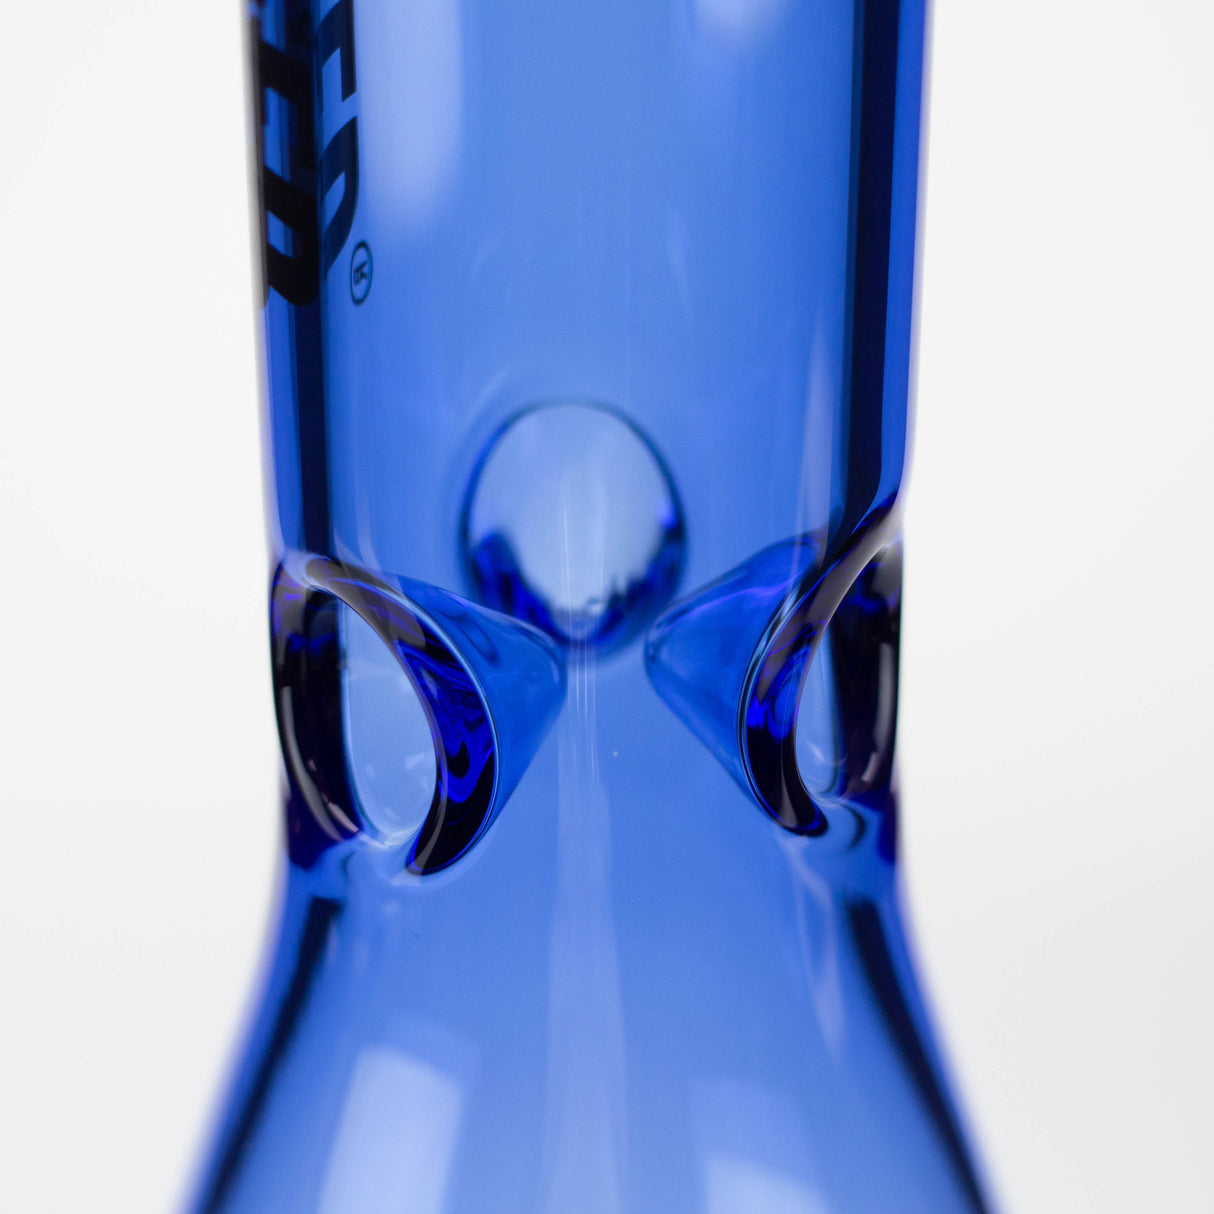 WENEED®-12" Weneed Dark Matter Beaker 7mm glass bong